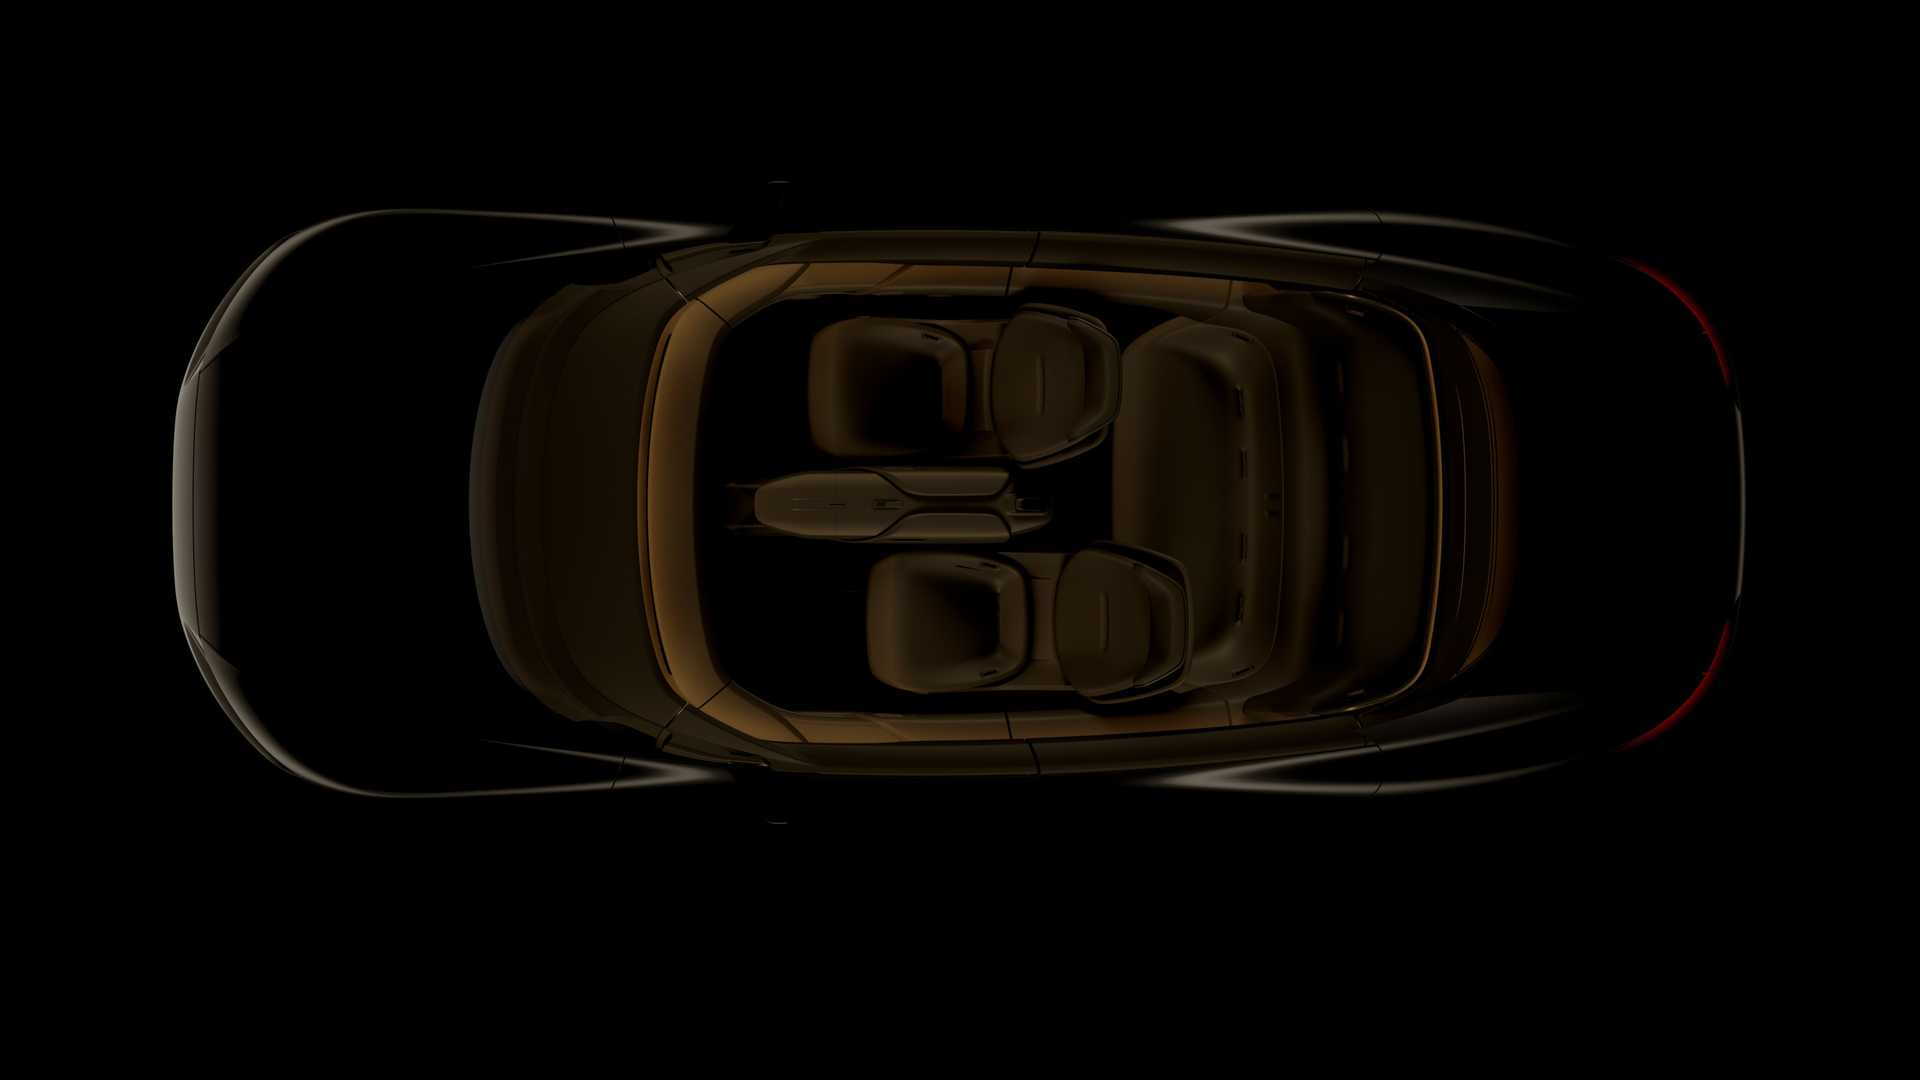 Teaser for Audi Grand Sphere concept